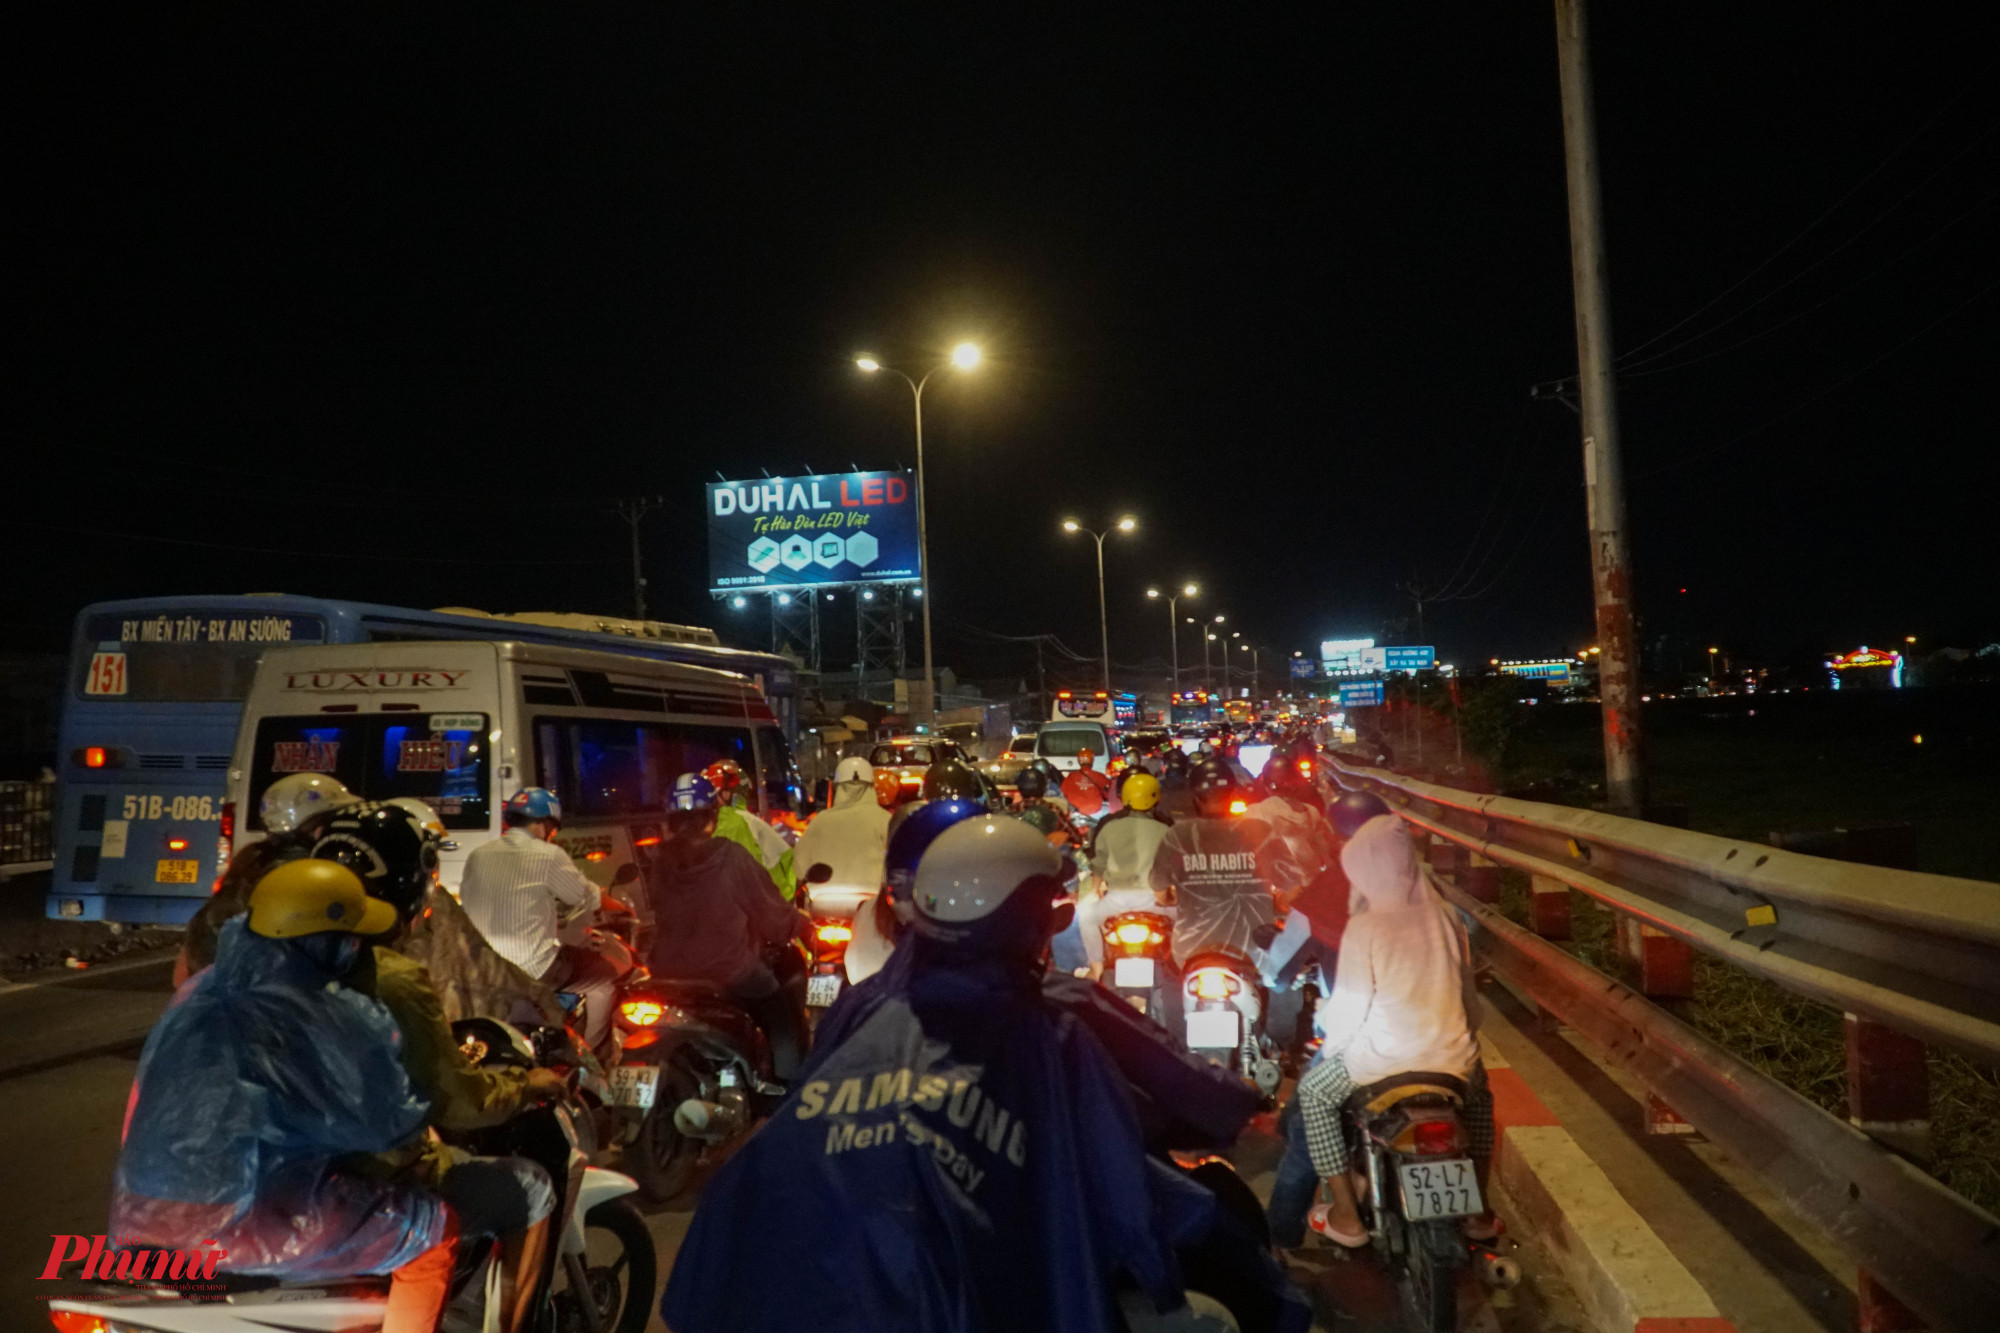 Chỉ duy nhất 1 điểm khiến xe di chuyển chậm là giao lộ đường Nguyễn Hữu Trí và QL1A